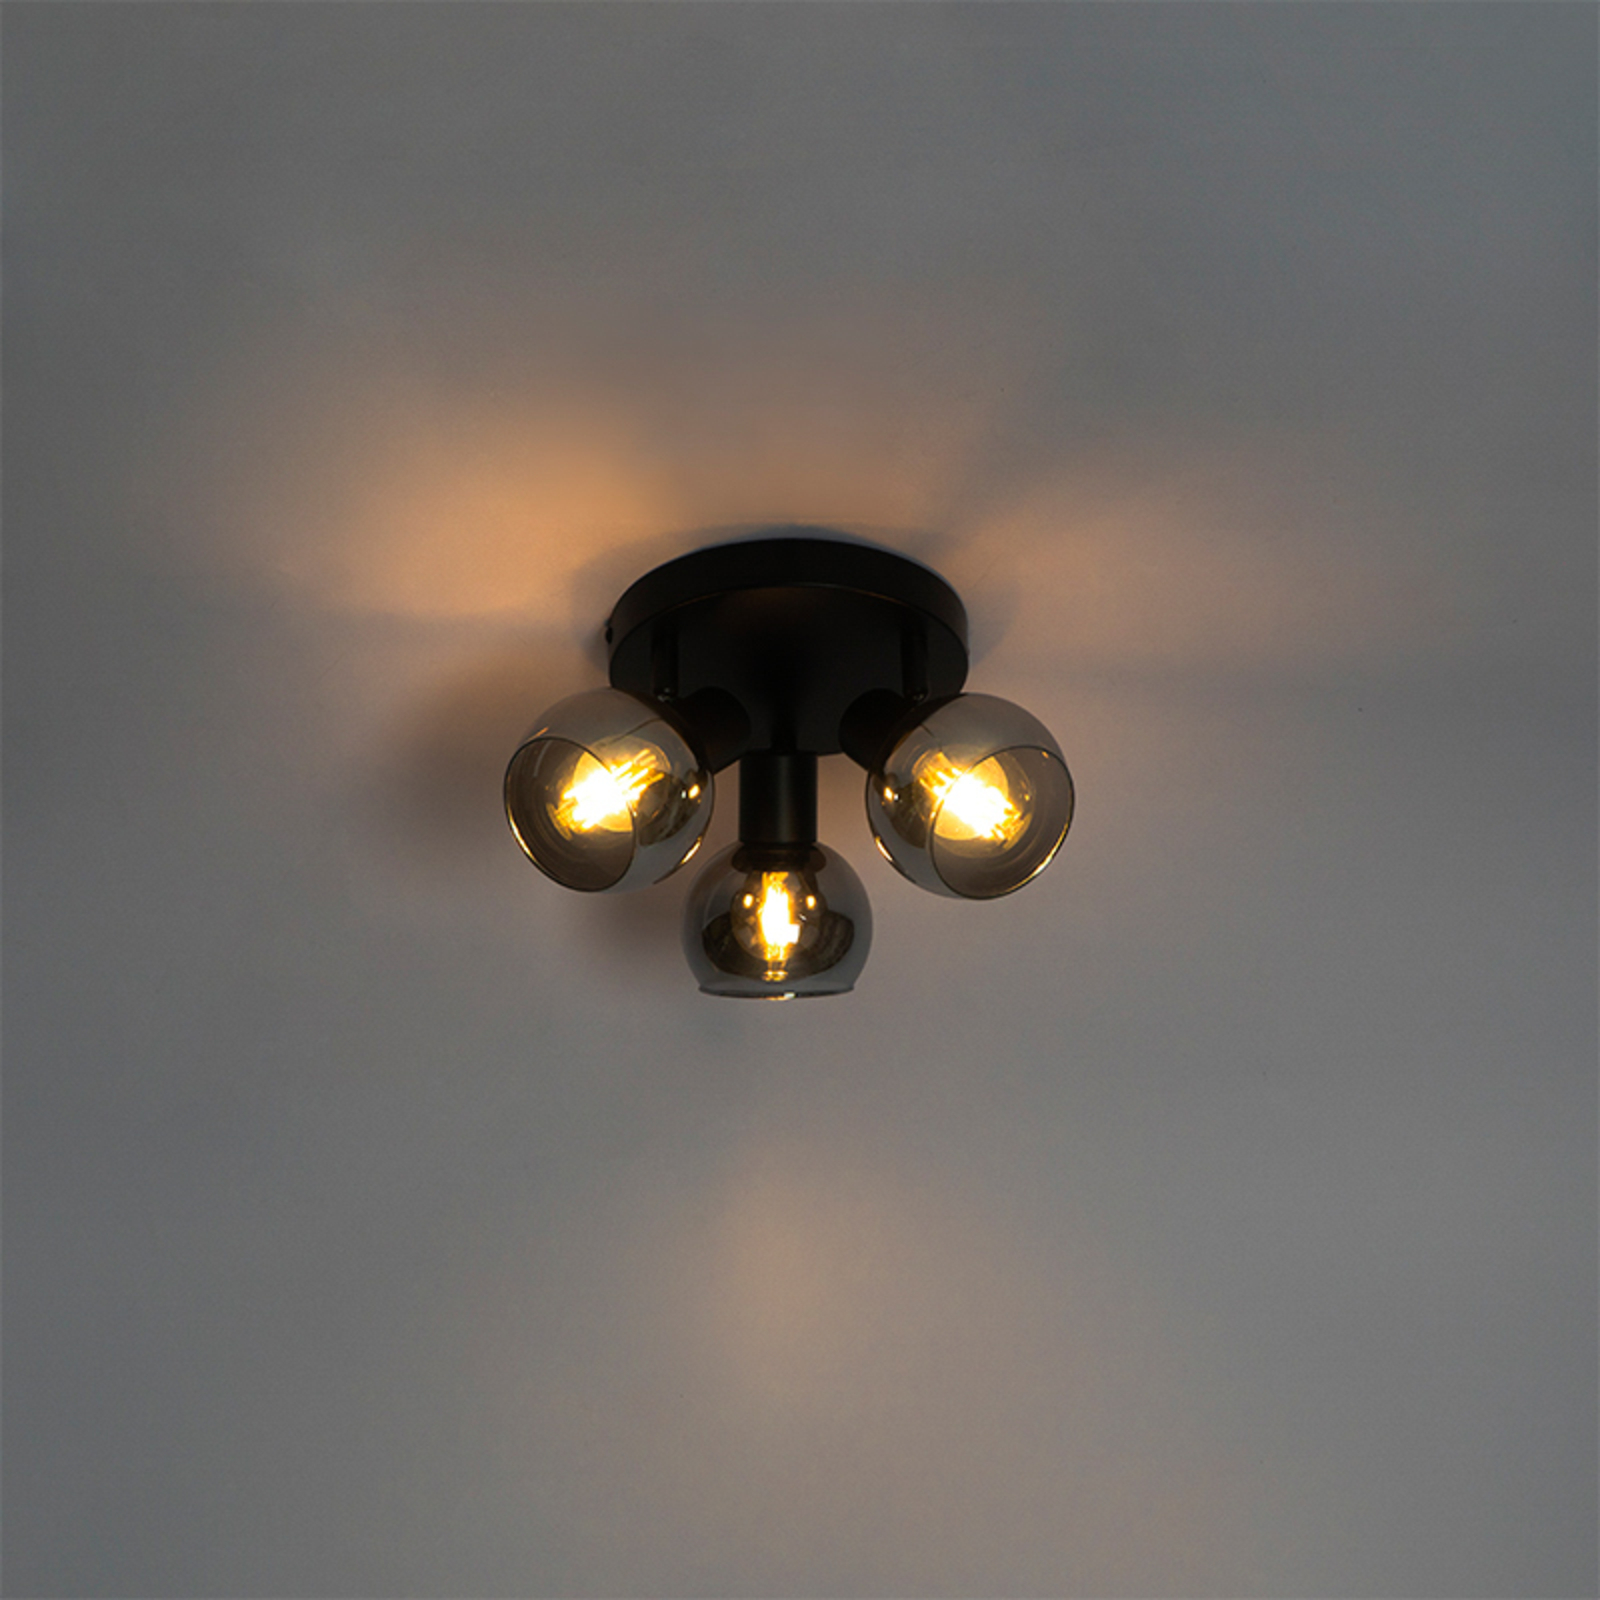 Vidro ceiling light, smoky glass, 3-bulb